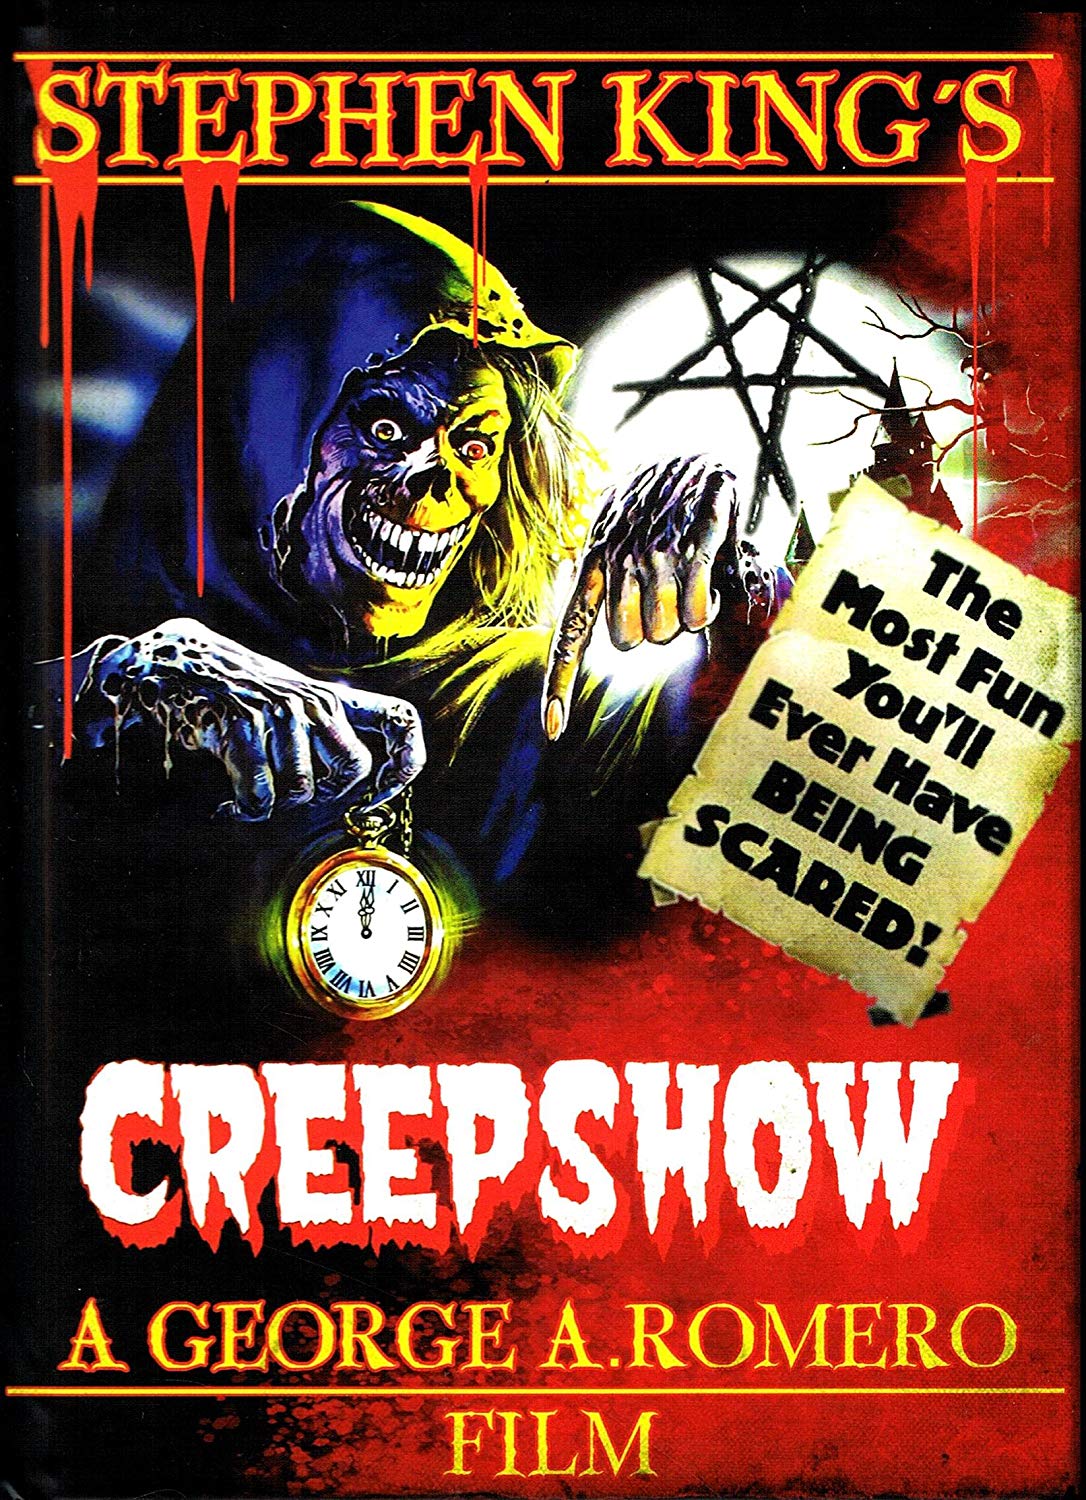 Cover - Creepshow - Die unheimlich verrückte Geisterstunde.jpg